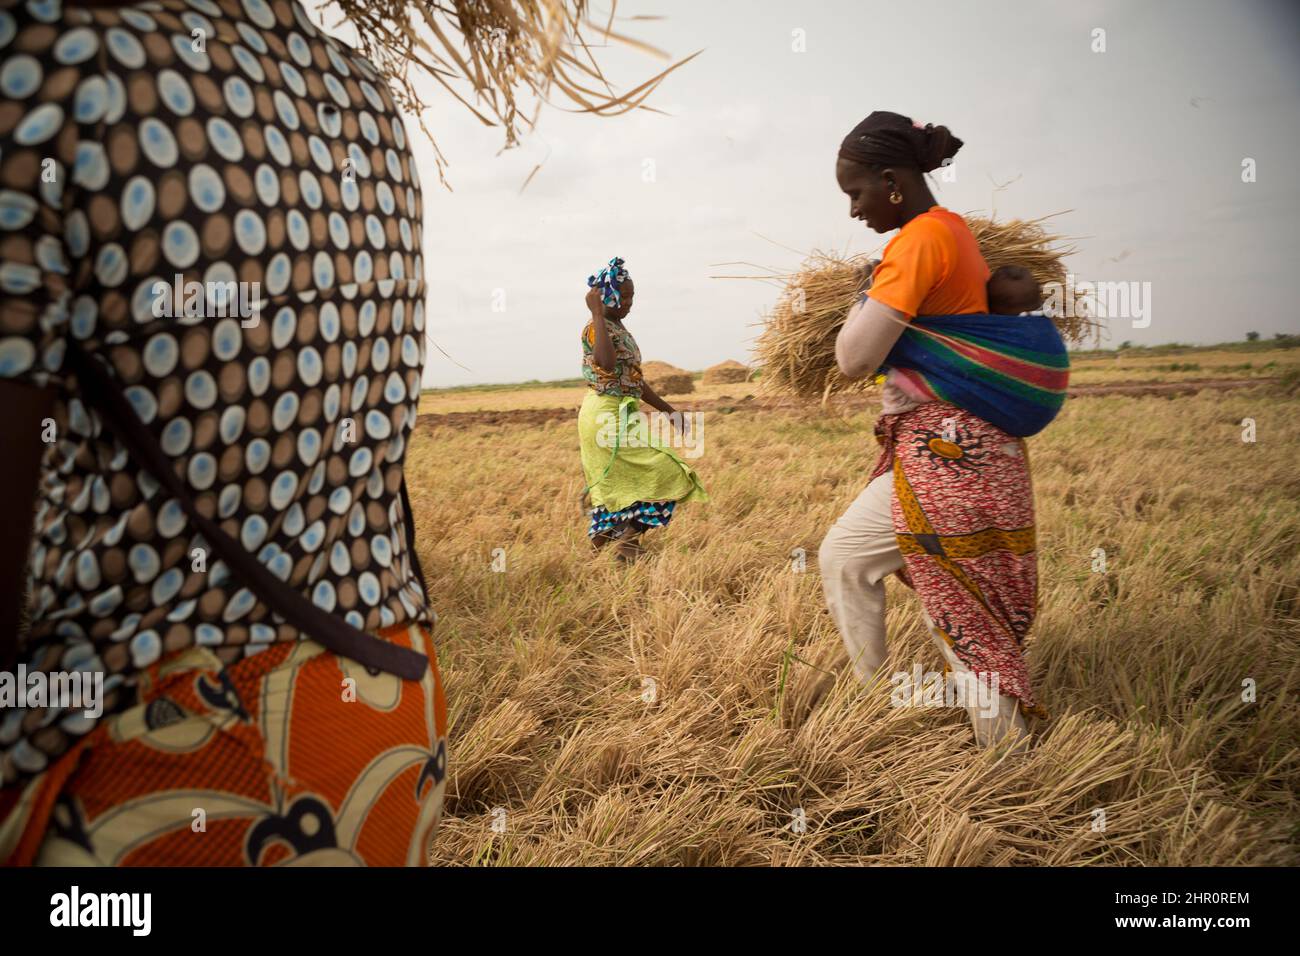 Les agricultrices travaillent à la récolte du riz dans le nord du Sénégal, en Afrique de l'Ouest, en enlevant et en empilant le foin laissé sur le sol. Banque D'Images